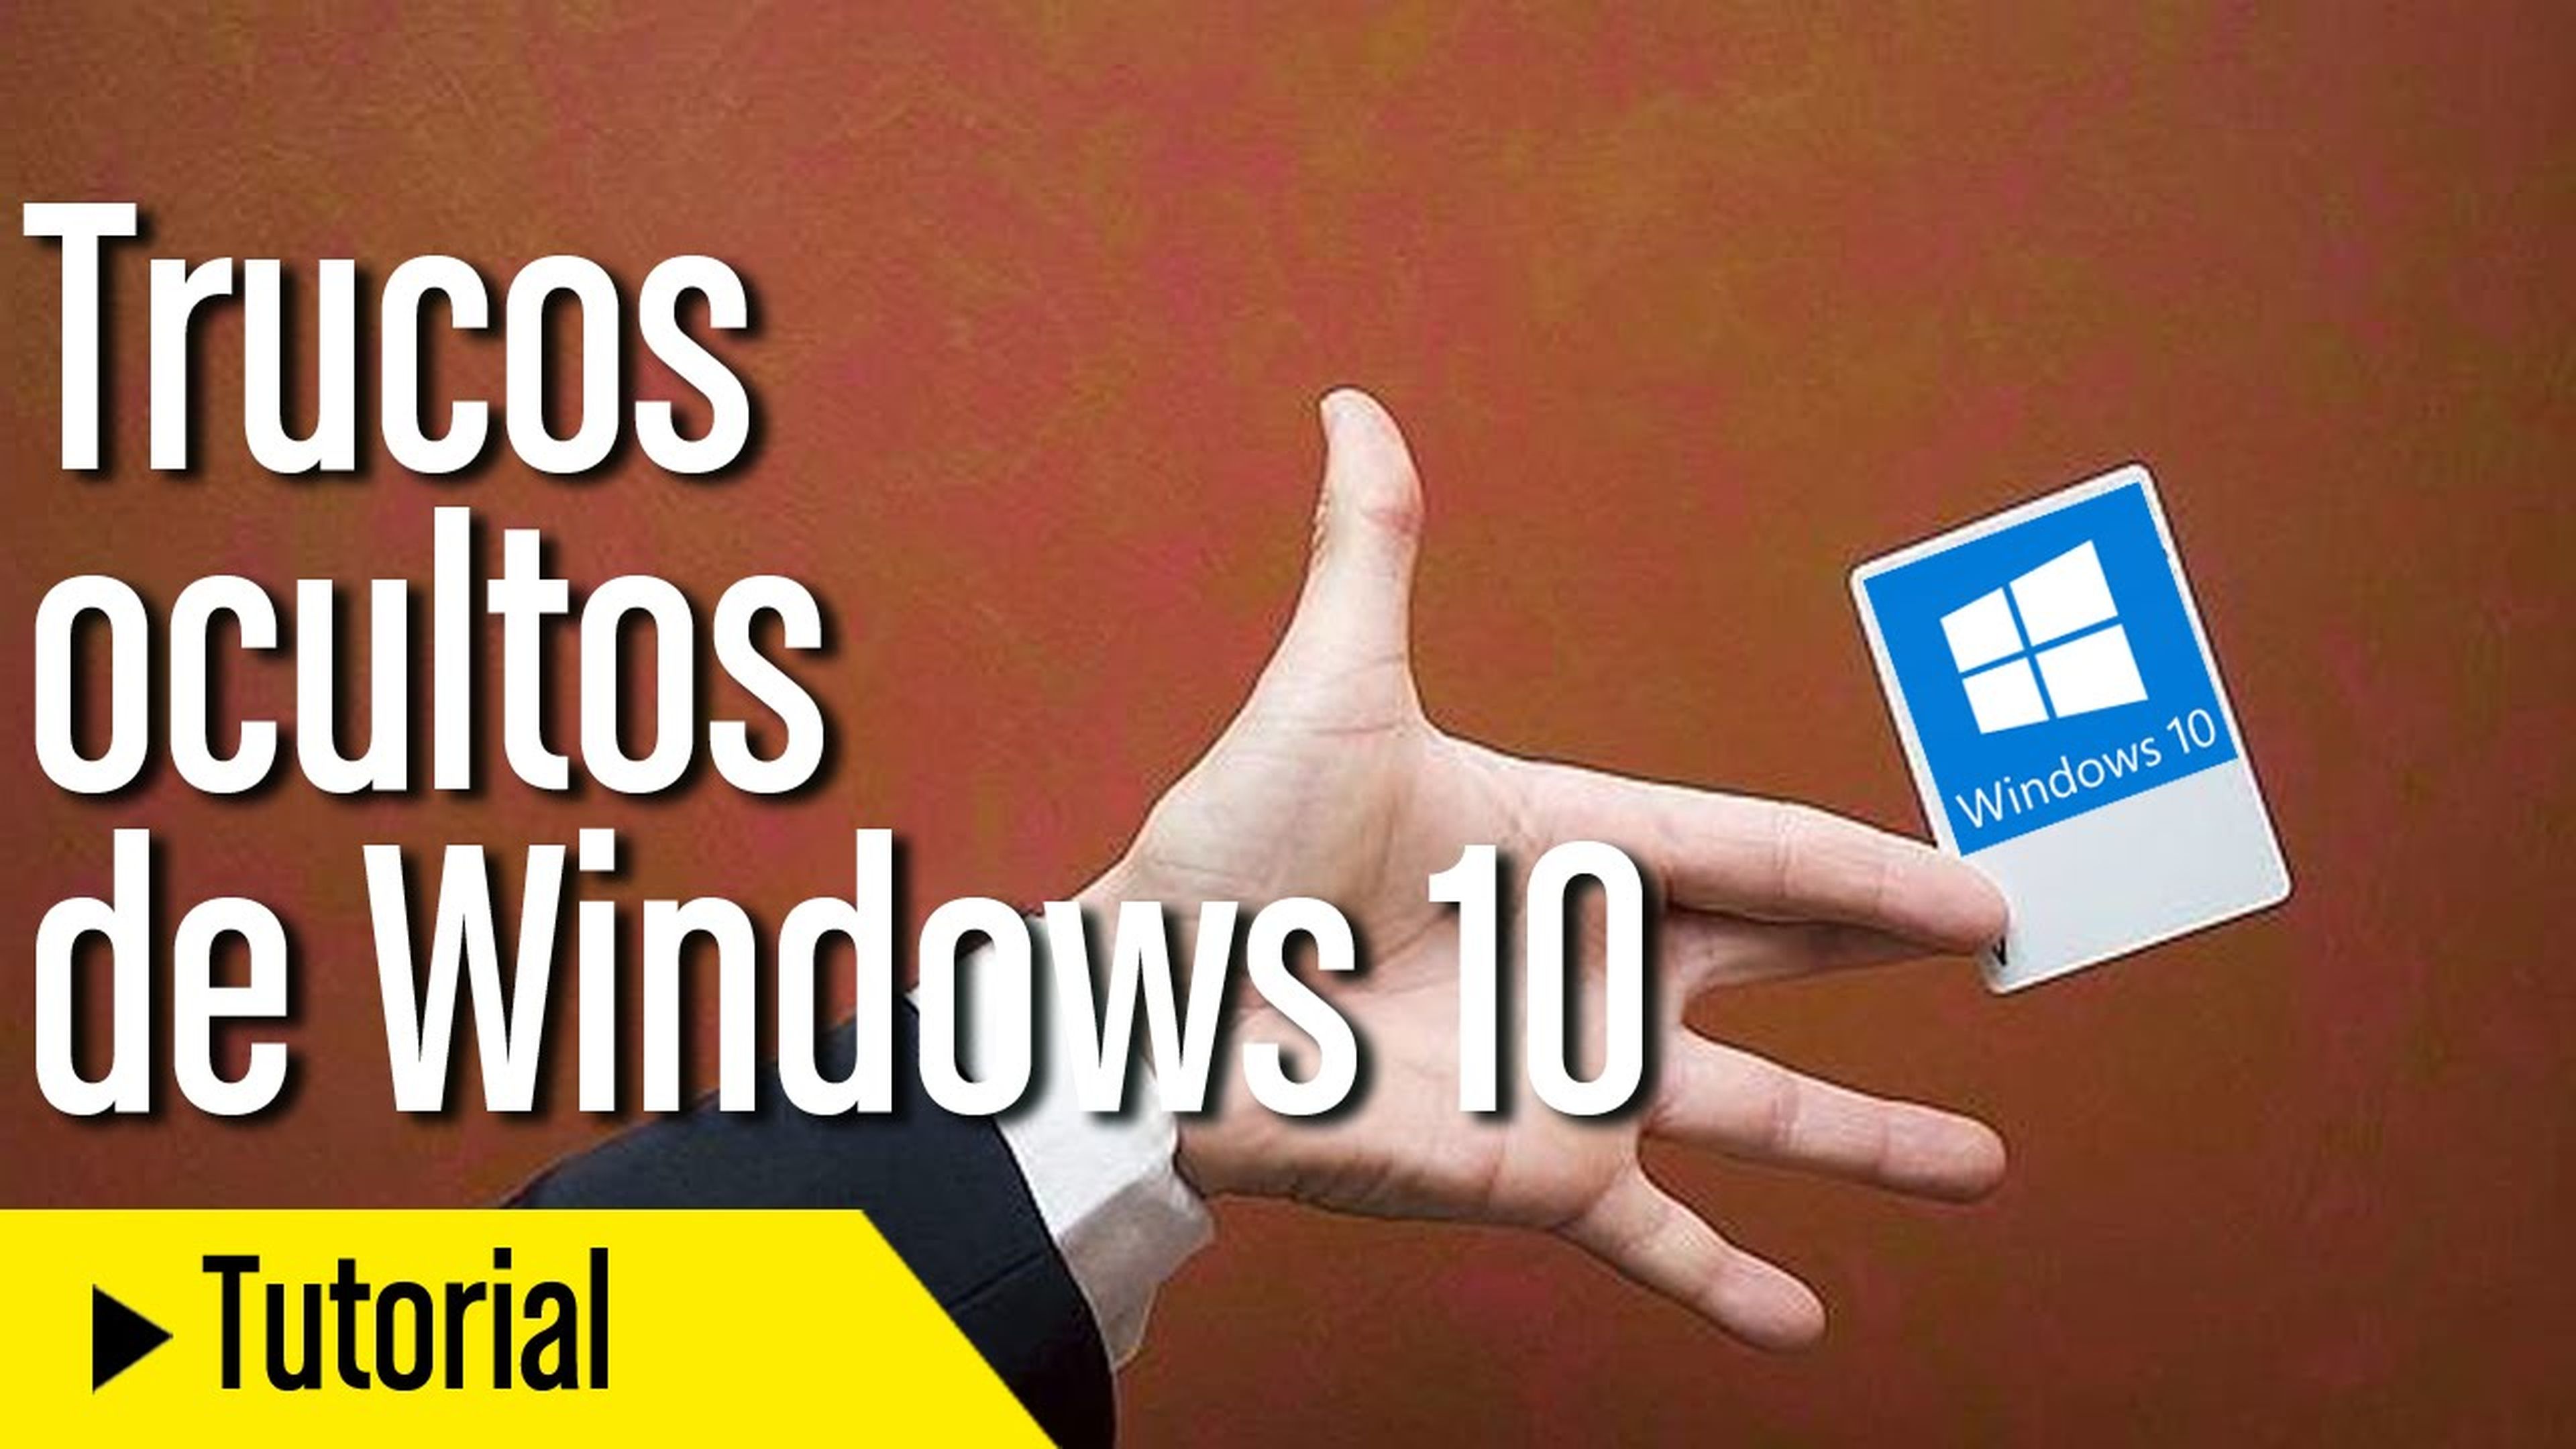 Trucos ocultos de Windows 10